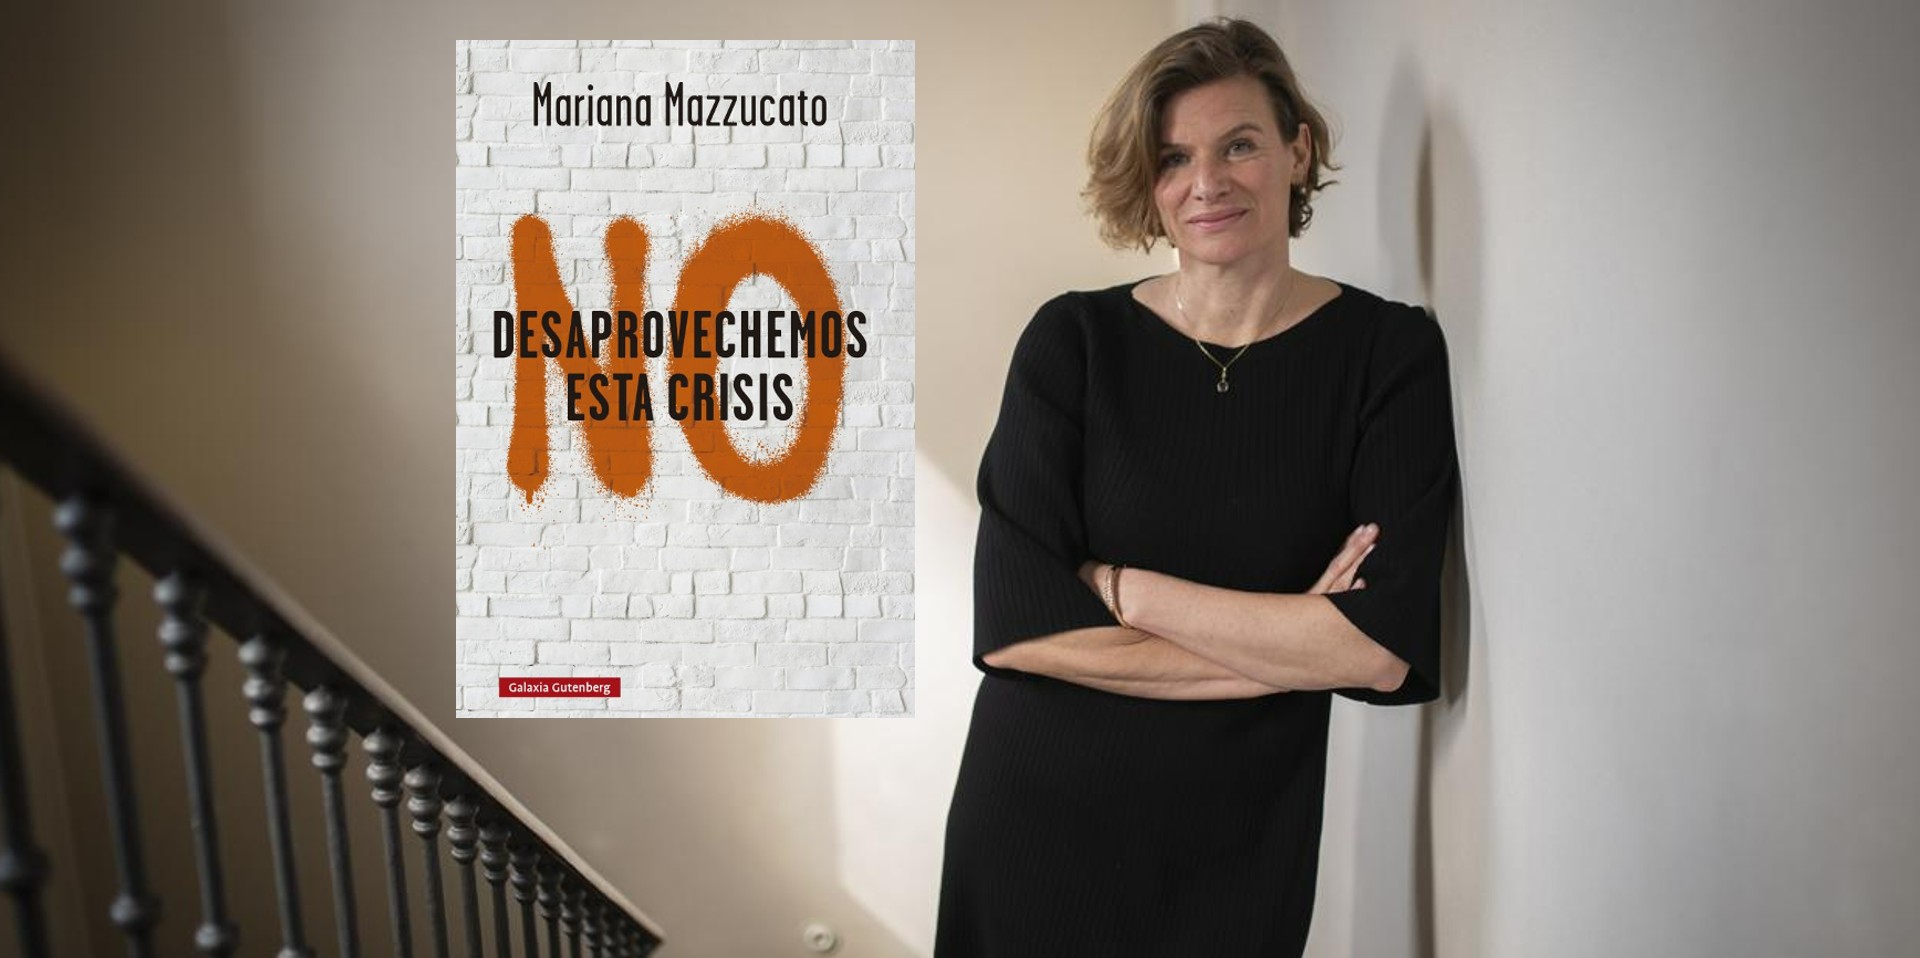 La economista Mariana Mazzucato reflexiona sobre el impacto económico de la pandemia por el Covid-19 en su libro "No desaprovechemos esta crisis".